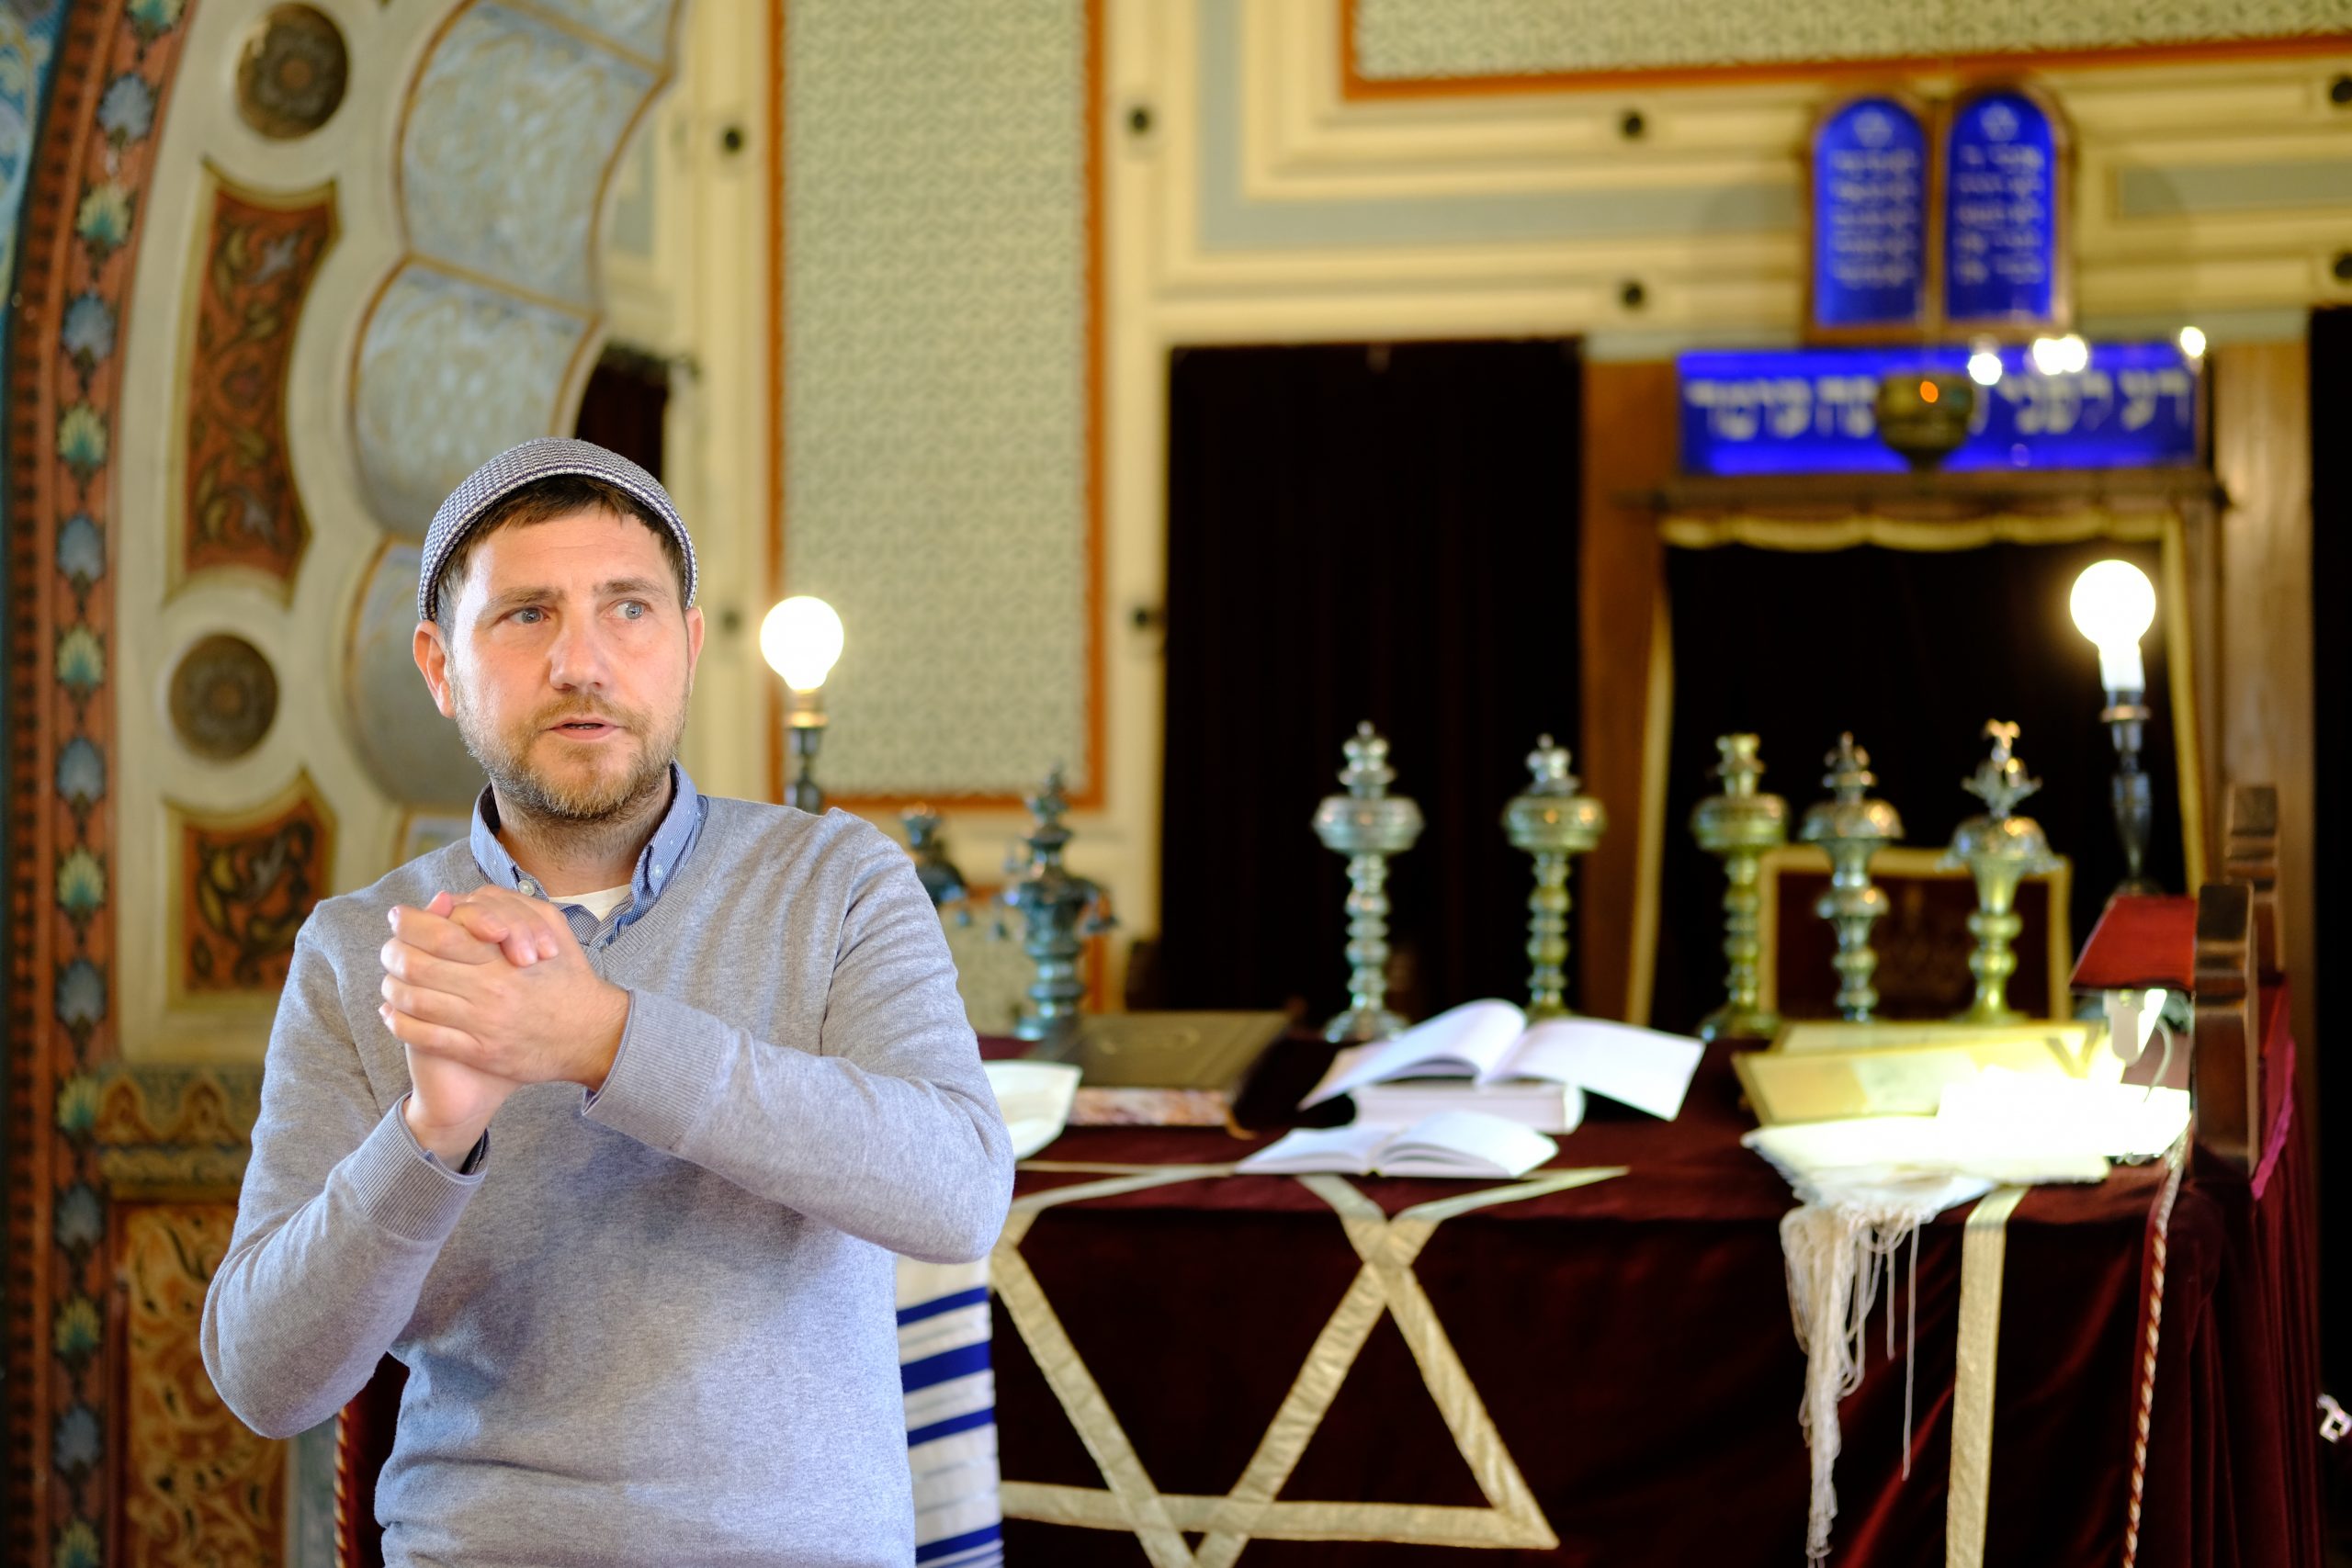 Kantor Igor Bencion Kozemjakin im Gespräch in der Synagoge in Sarajevo mit der Tagungsgruppe